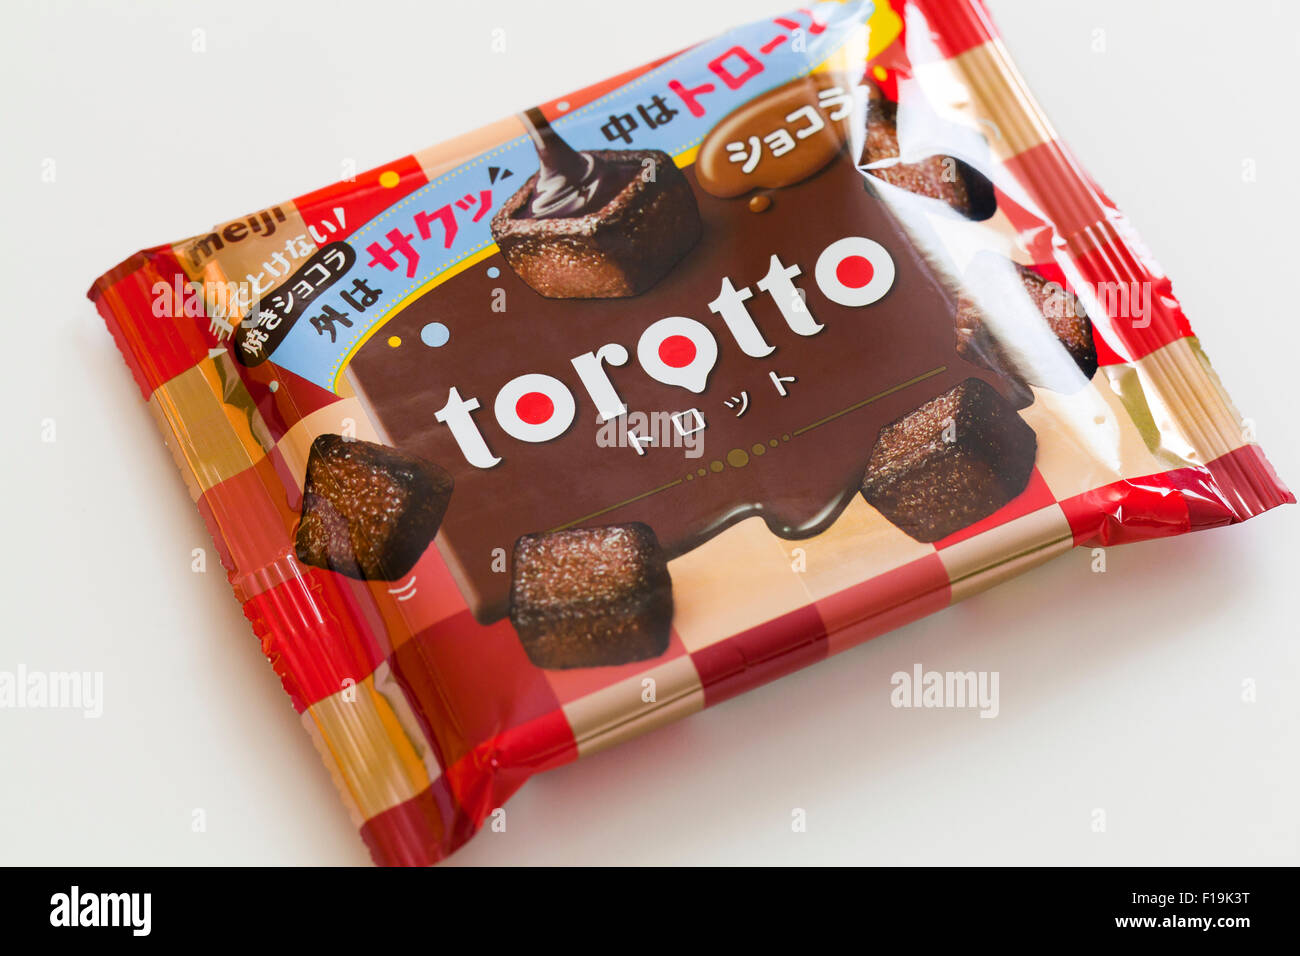 Meiji Torotto cremosa confezione di cioccolato Foto Stock